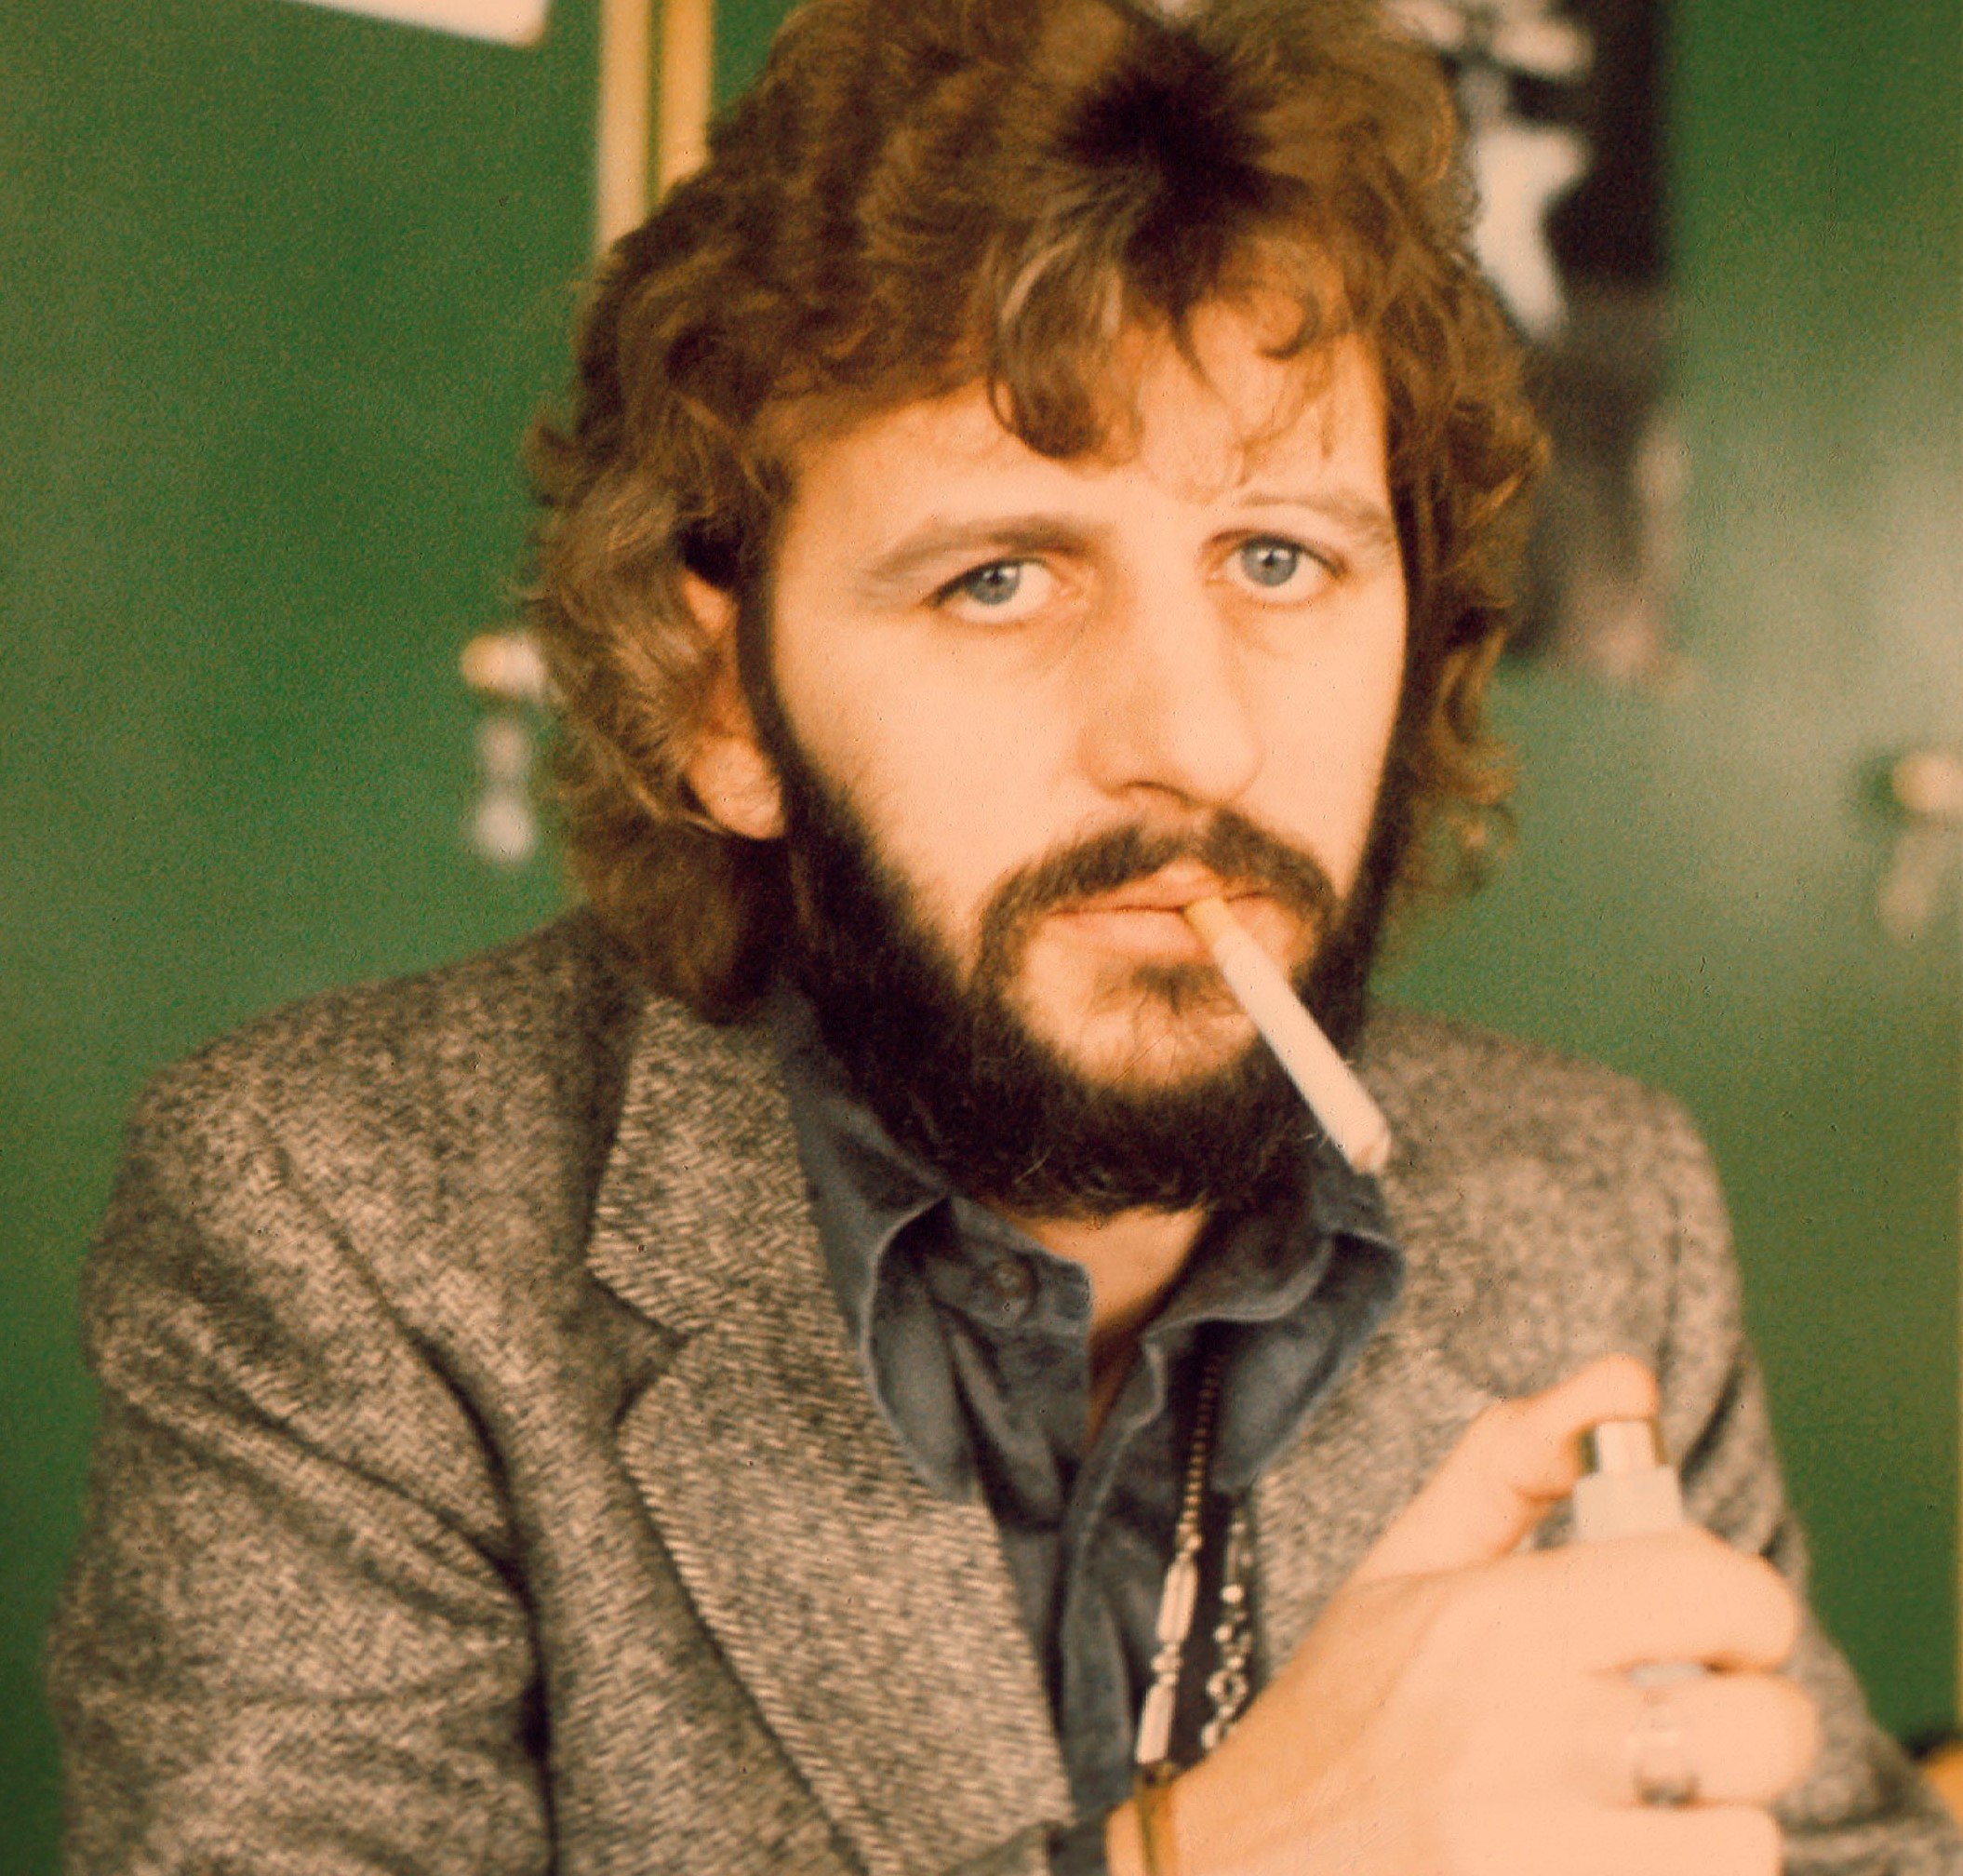 Ringo Starr with a cigarette